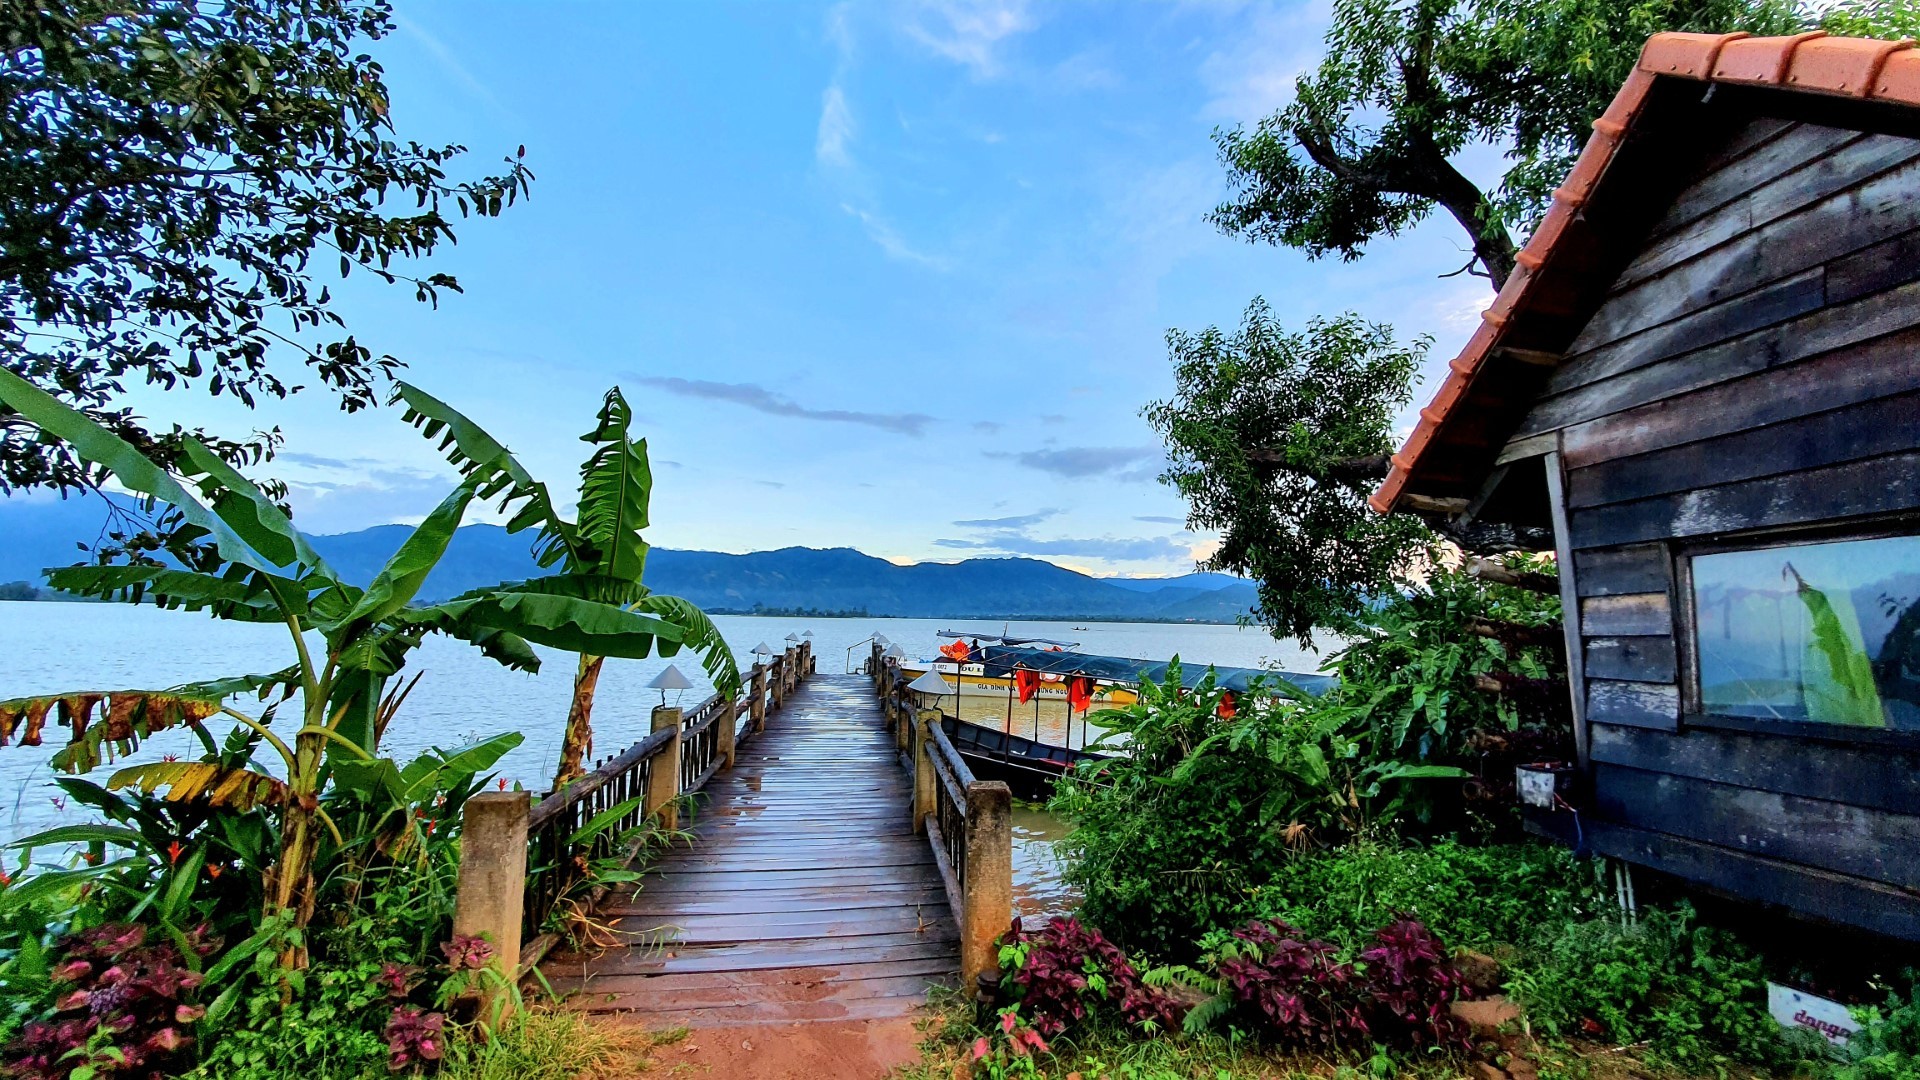 Thời điểm lý tưởng nhất khi đến Hồ Lắk là khoảng tháng 9 - 12. Thời tiết lúc này tương đối mát mẻ, dễ chịu, thoáng đãng, thích hợp cho những hoạt động vui chơi giải trí. ảnh 2